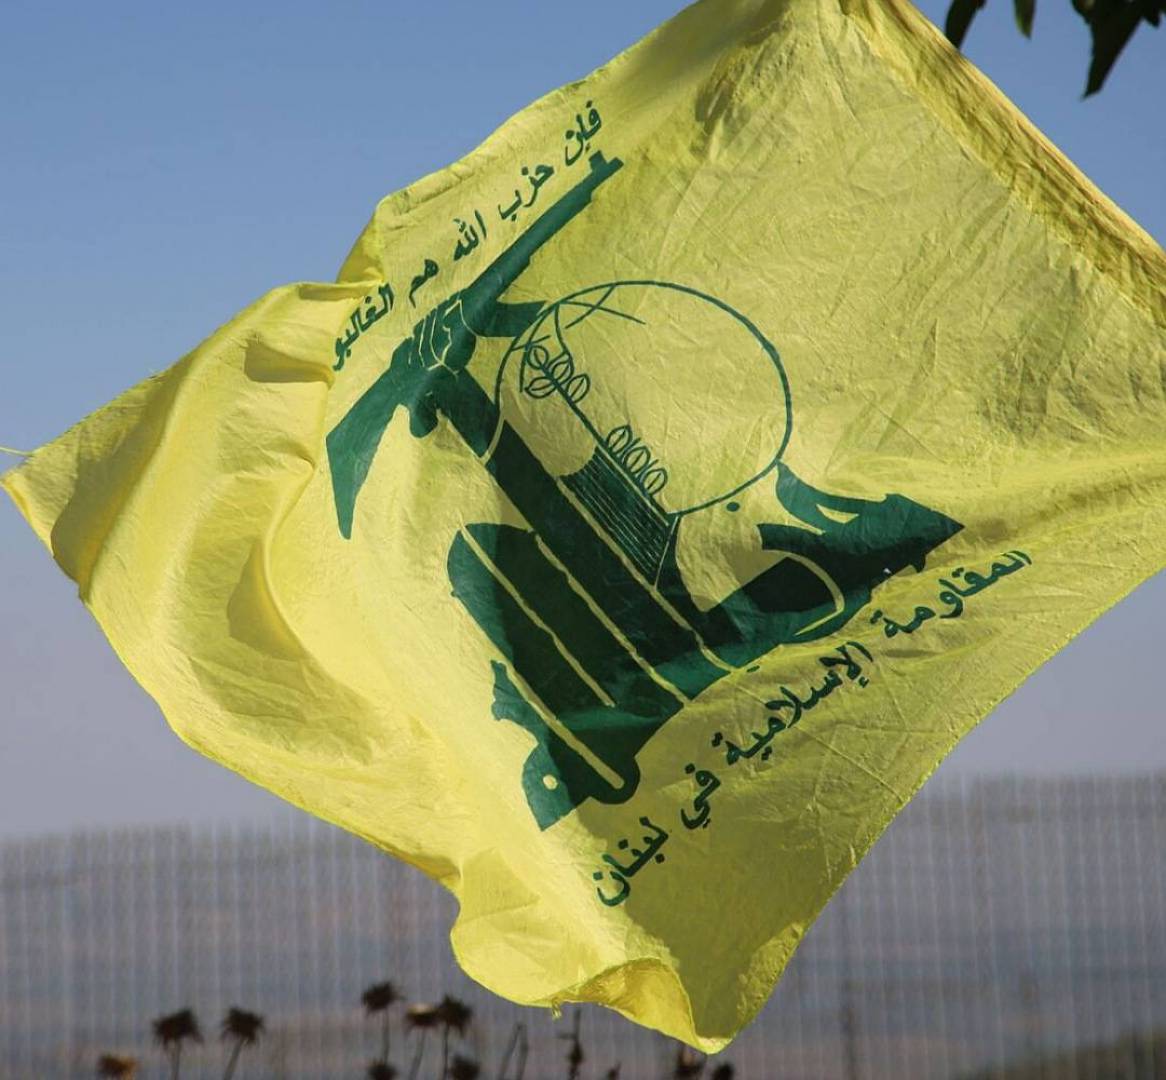 طائرات حزب الله تحوم فوق منصة غاز إسرائيلية في البحر المتوسط